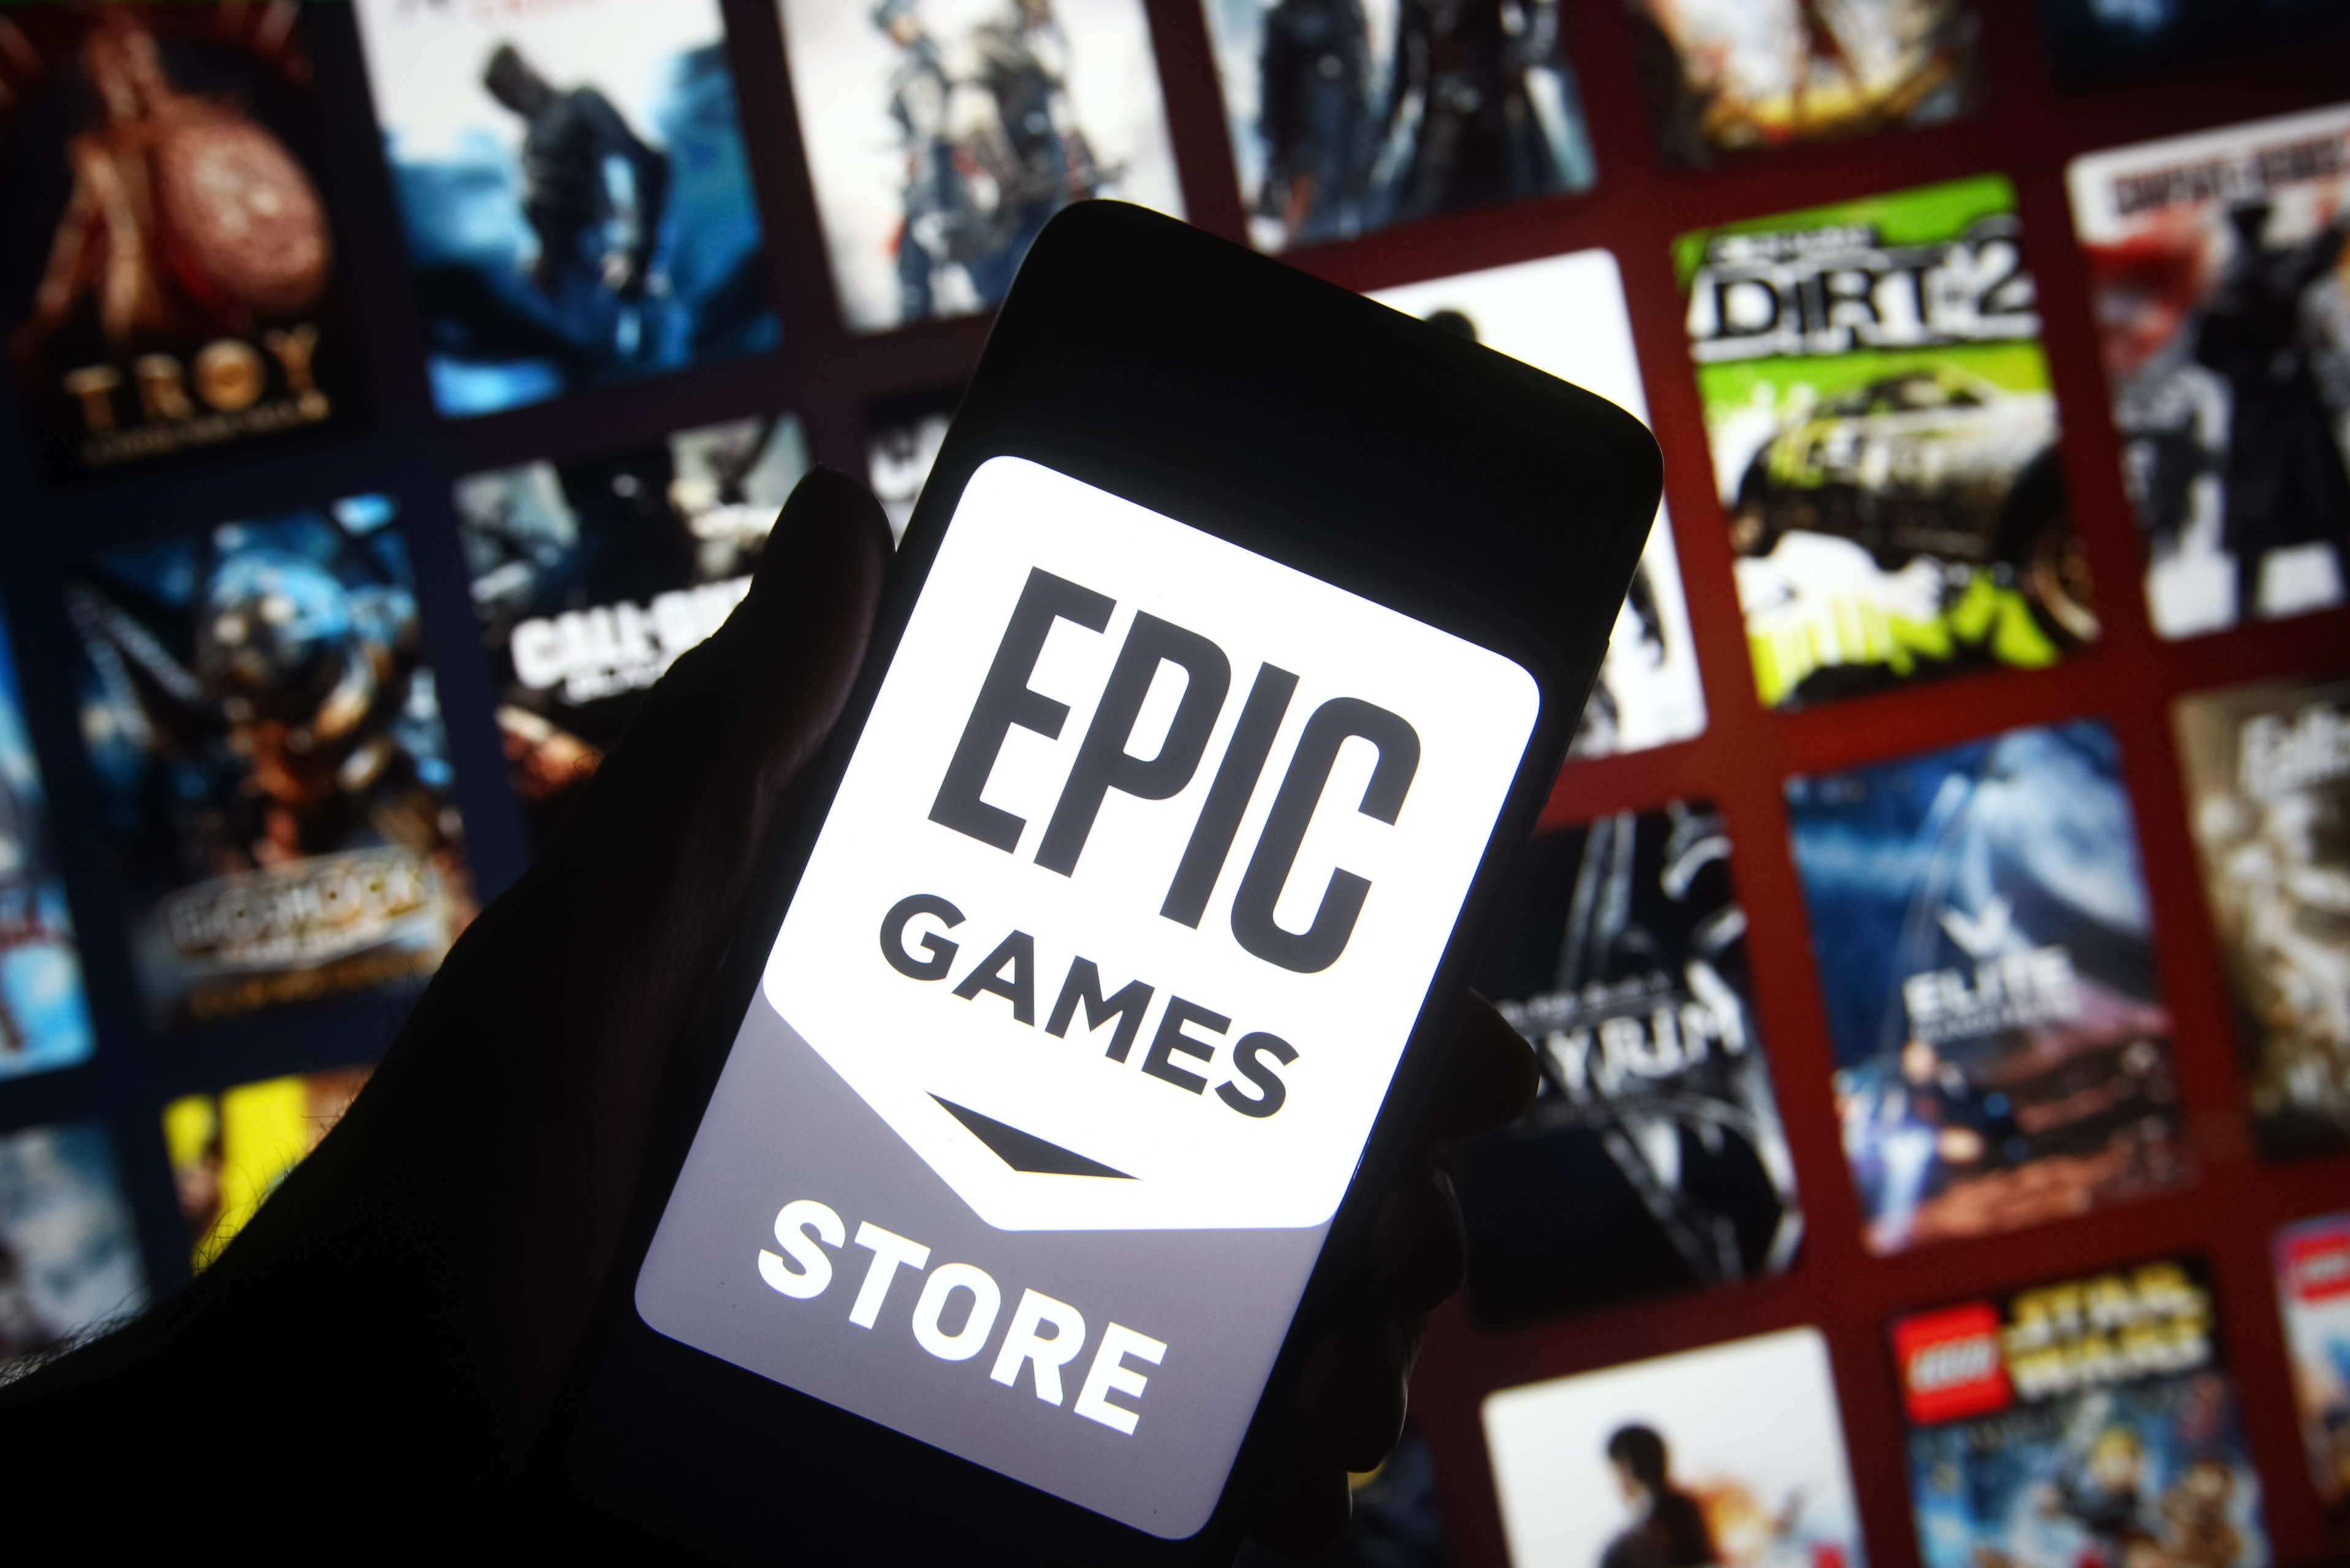 Começou a Promoção de Verão da Epic Games Store com Caschback de